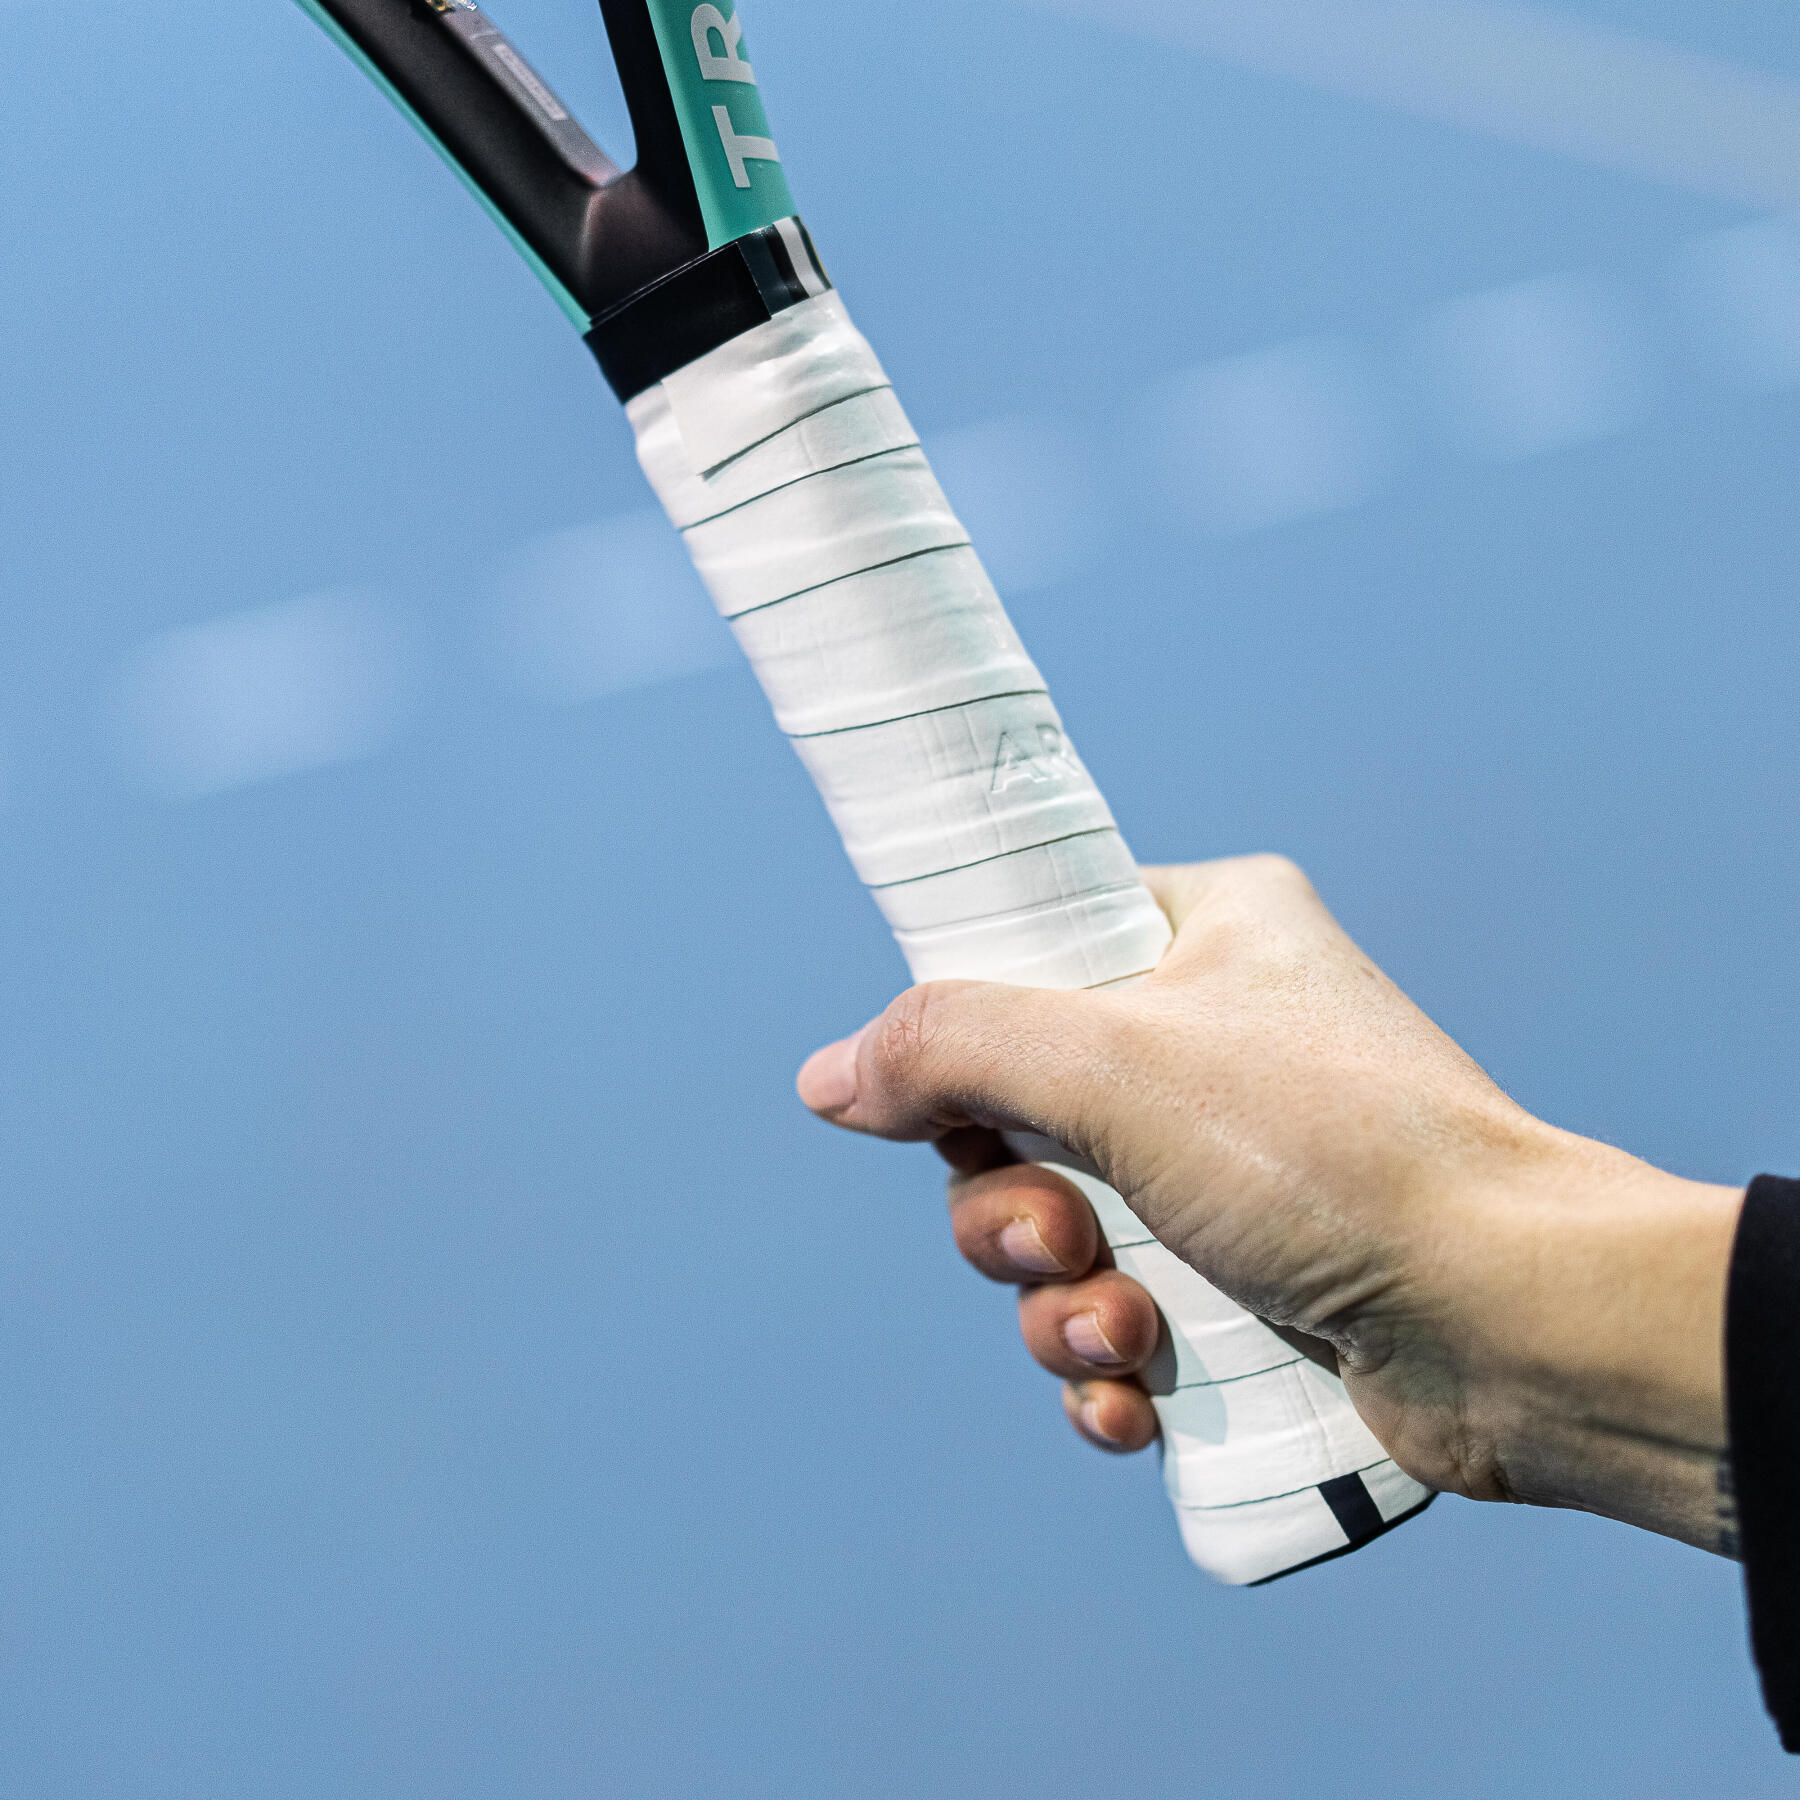 tennis racket handle size